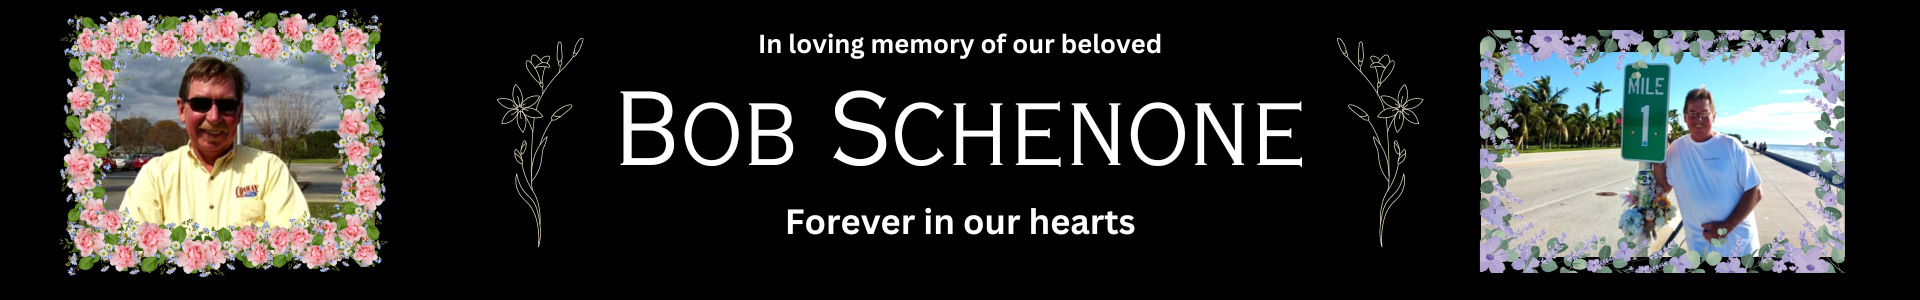 Bob Schenone Memorial